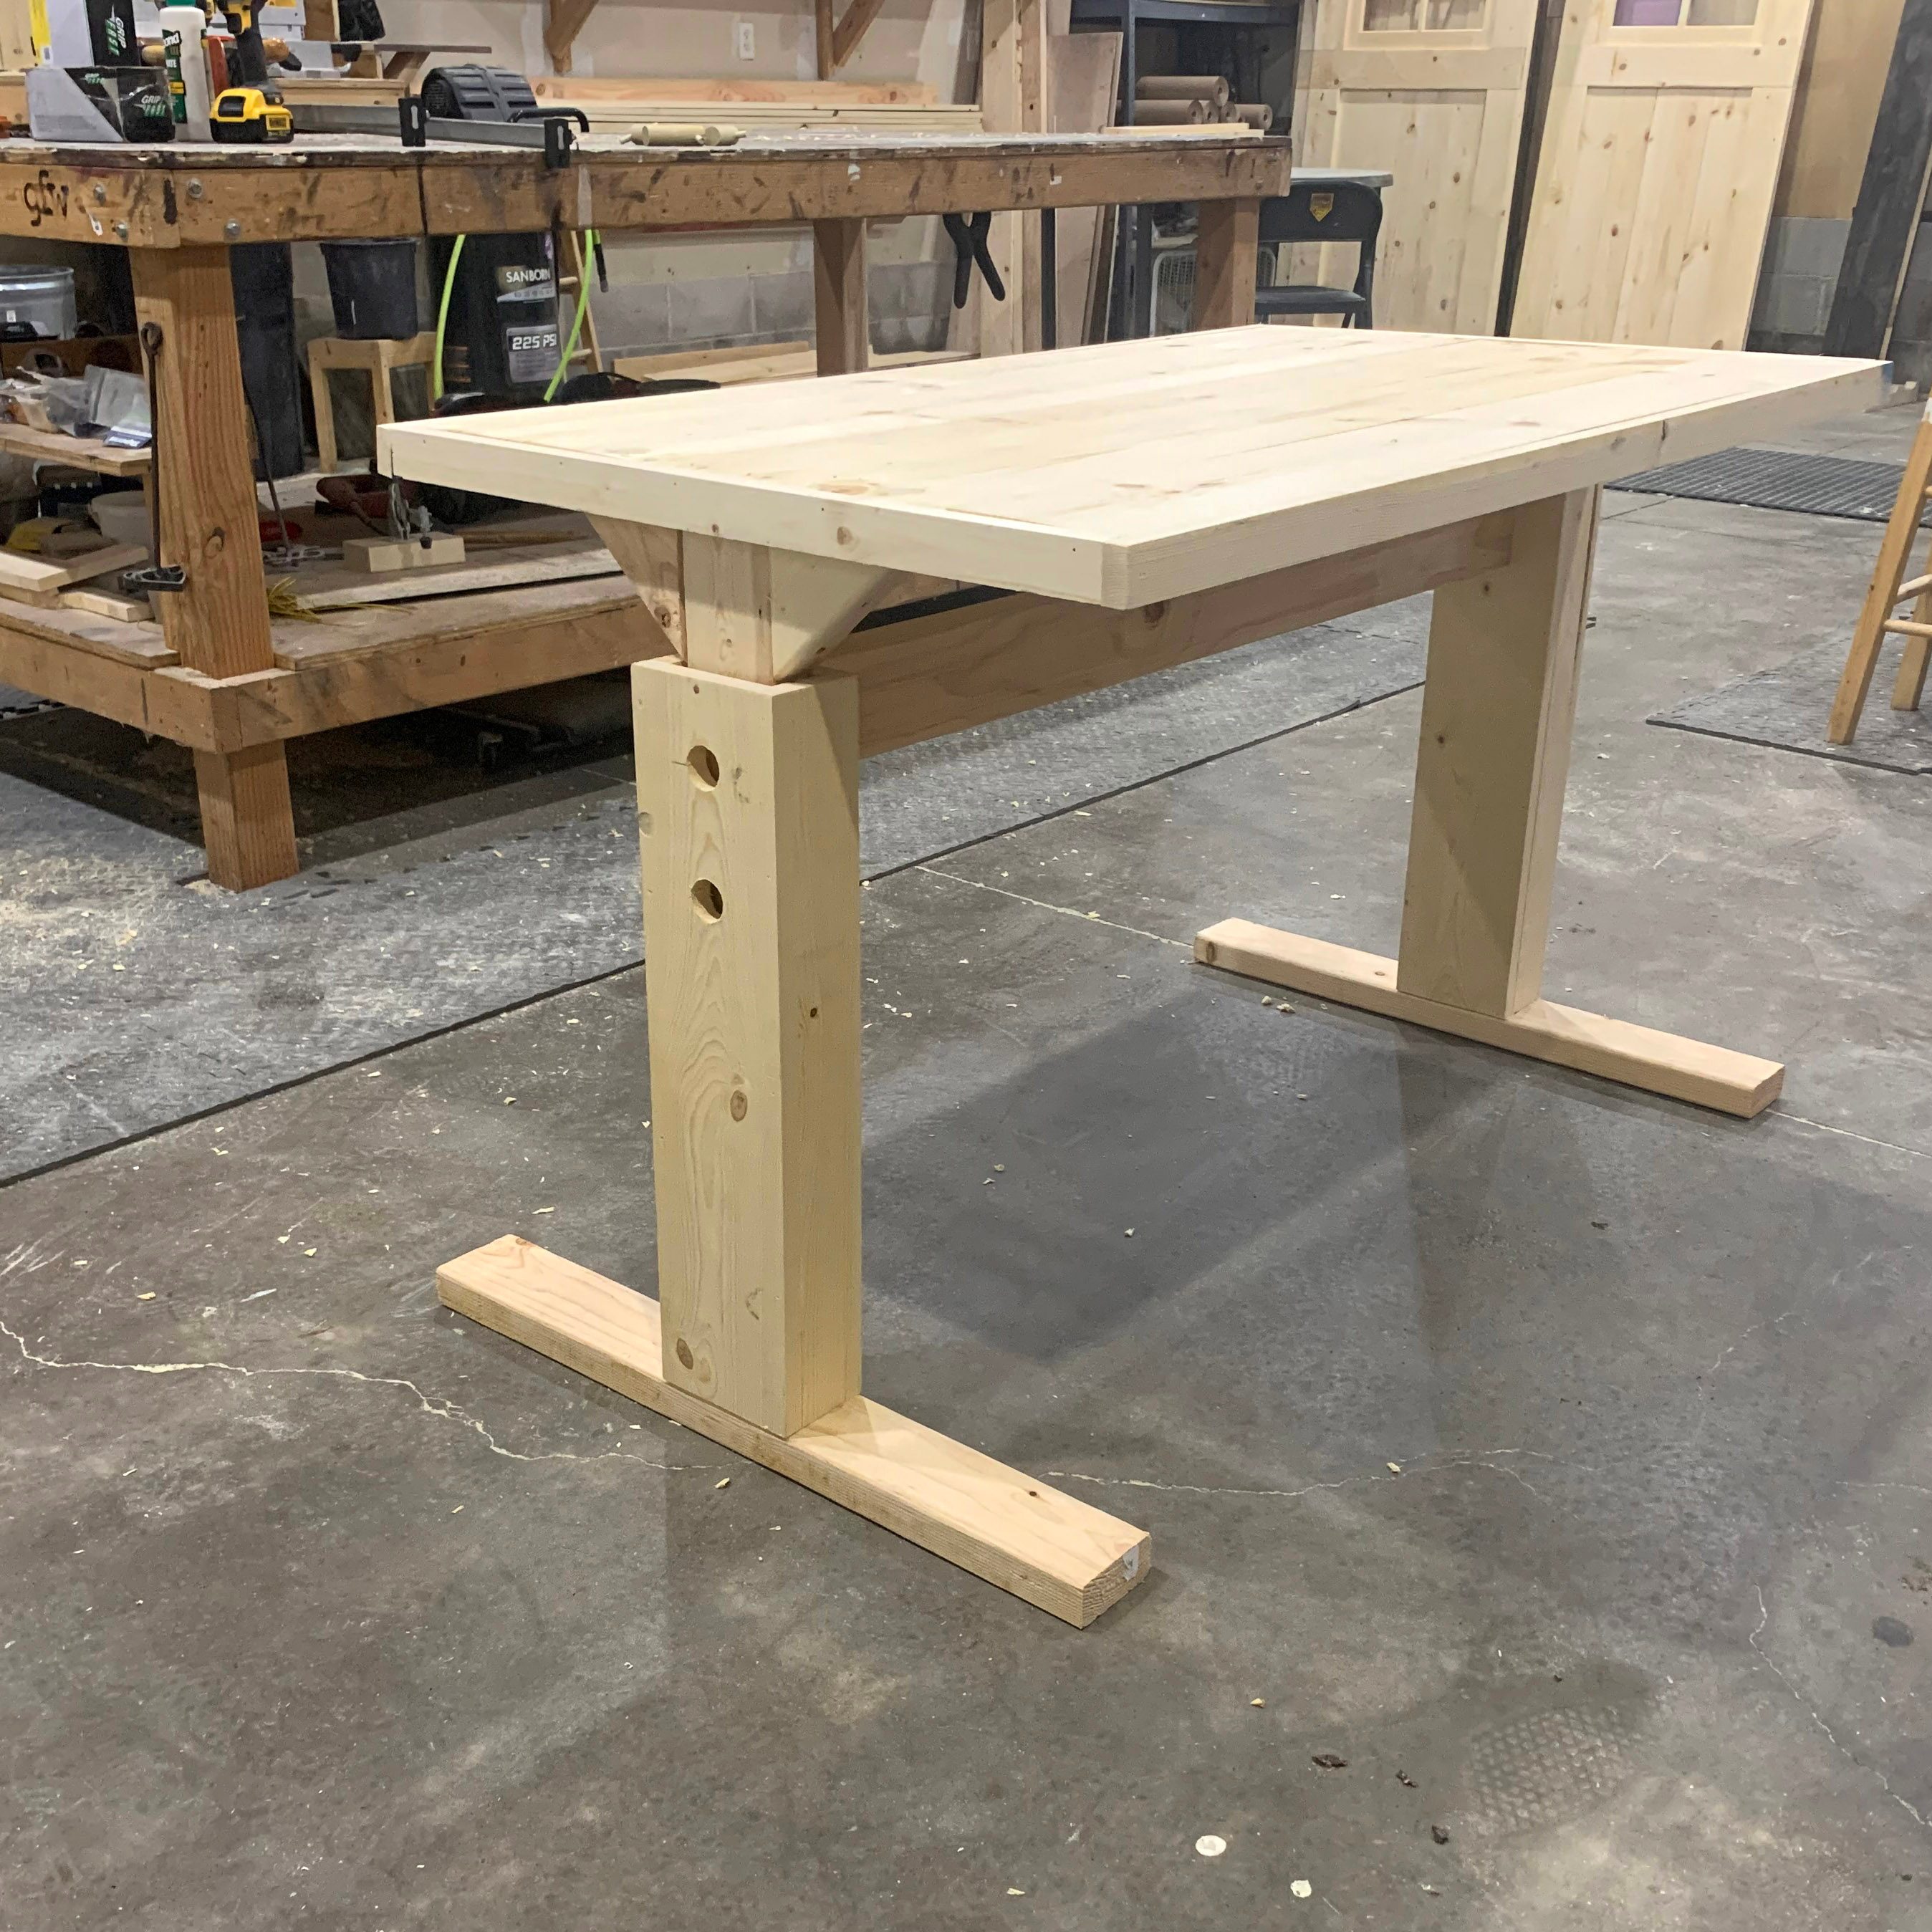 How to Make Your Own Adjustable DIY Desk (DIY)